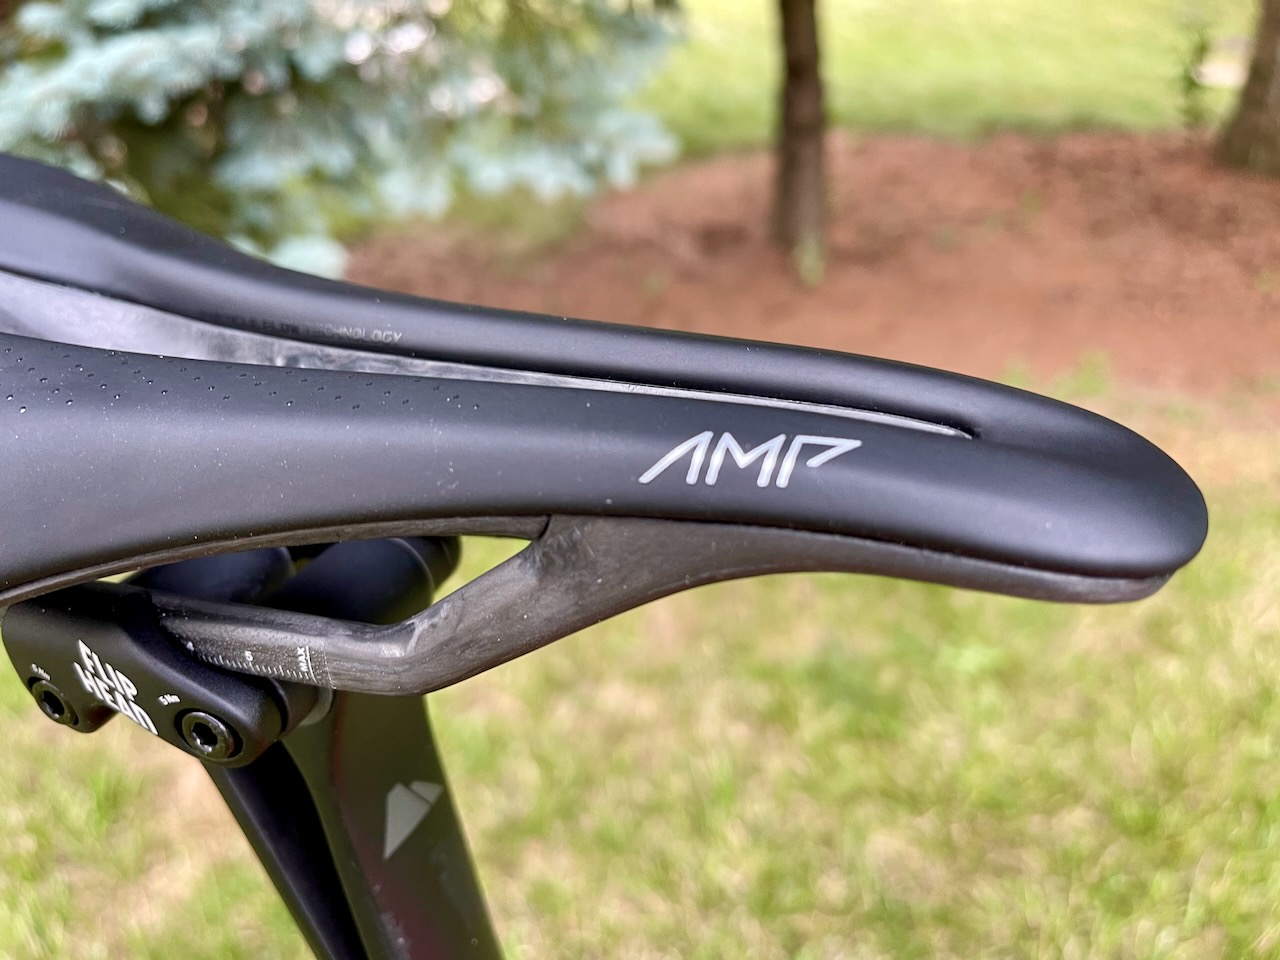 CADEX Amp saddle review nose close up